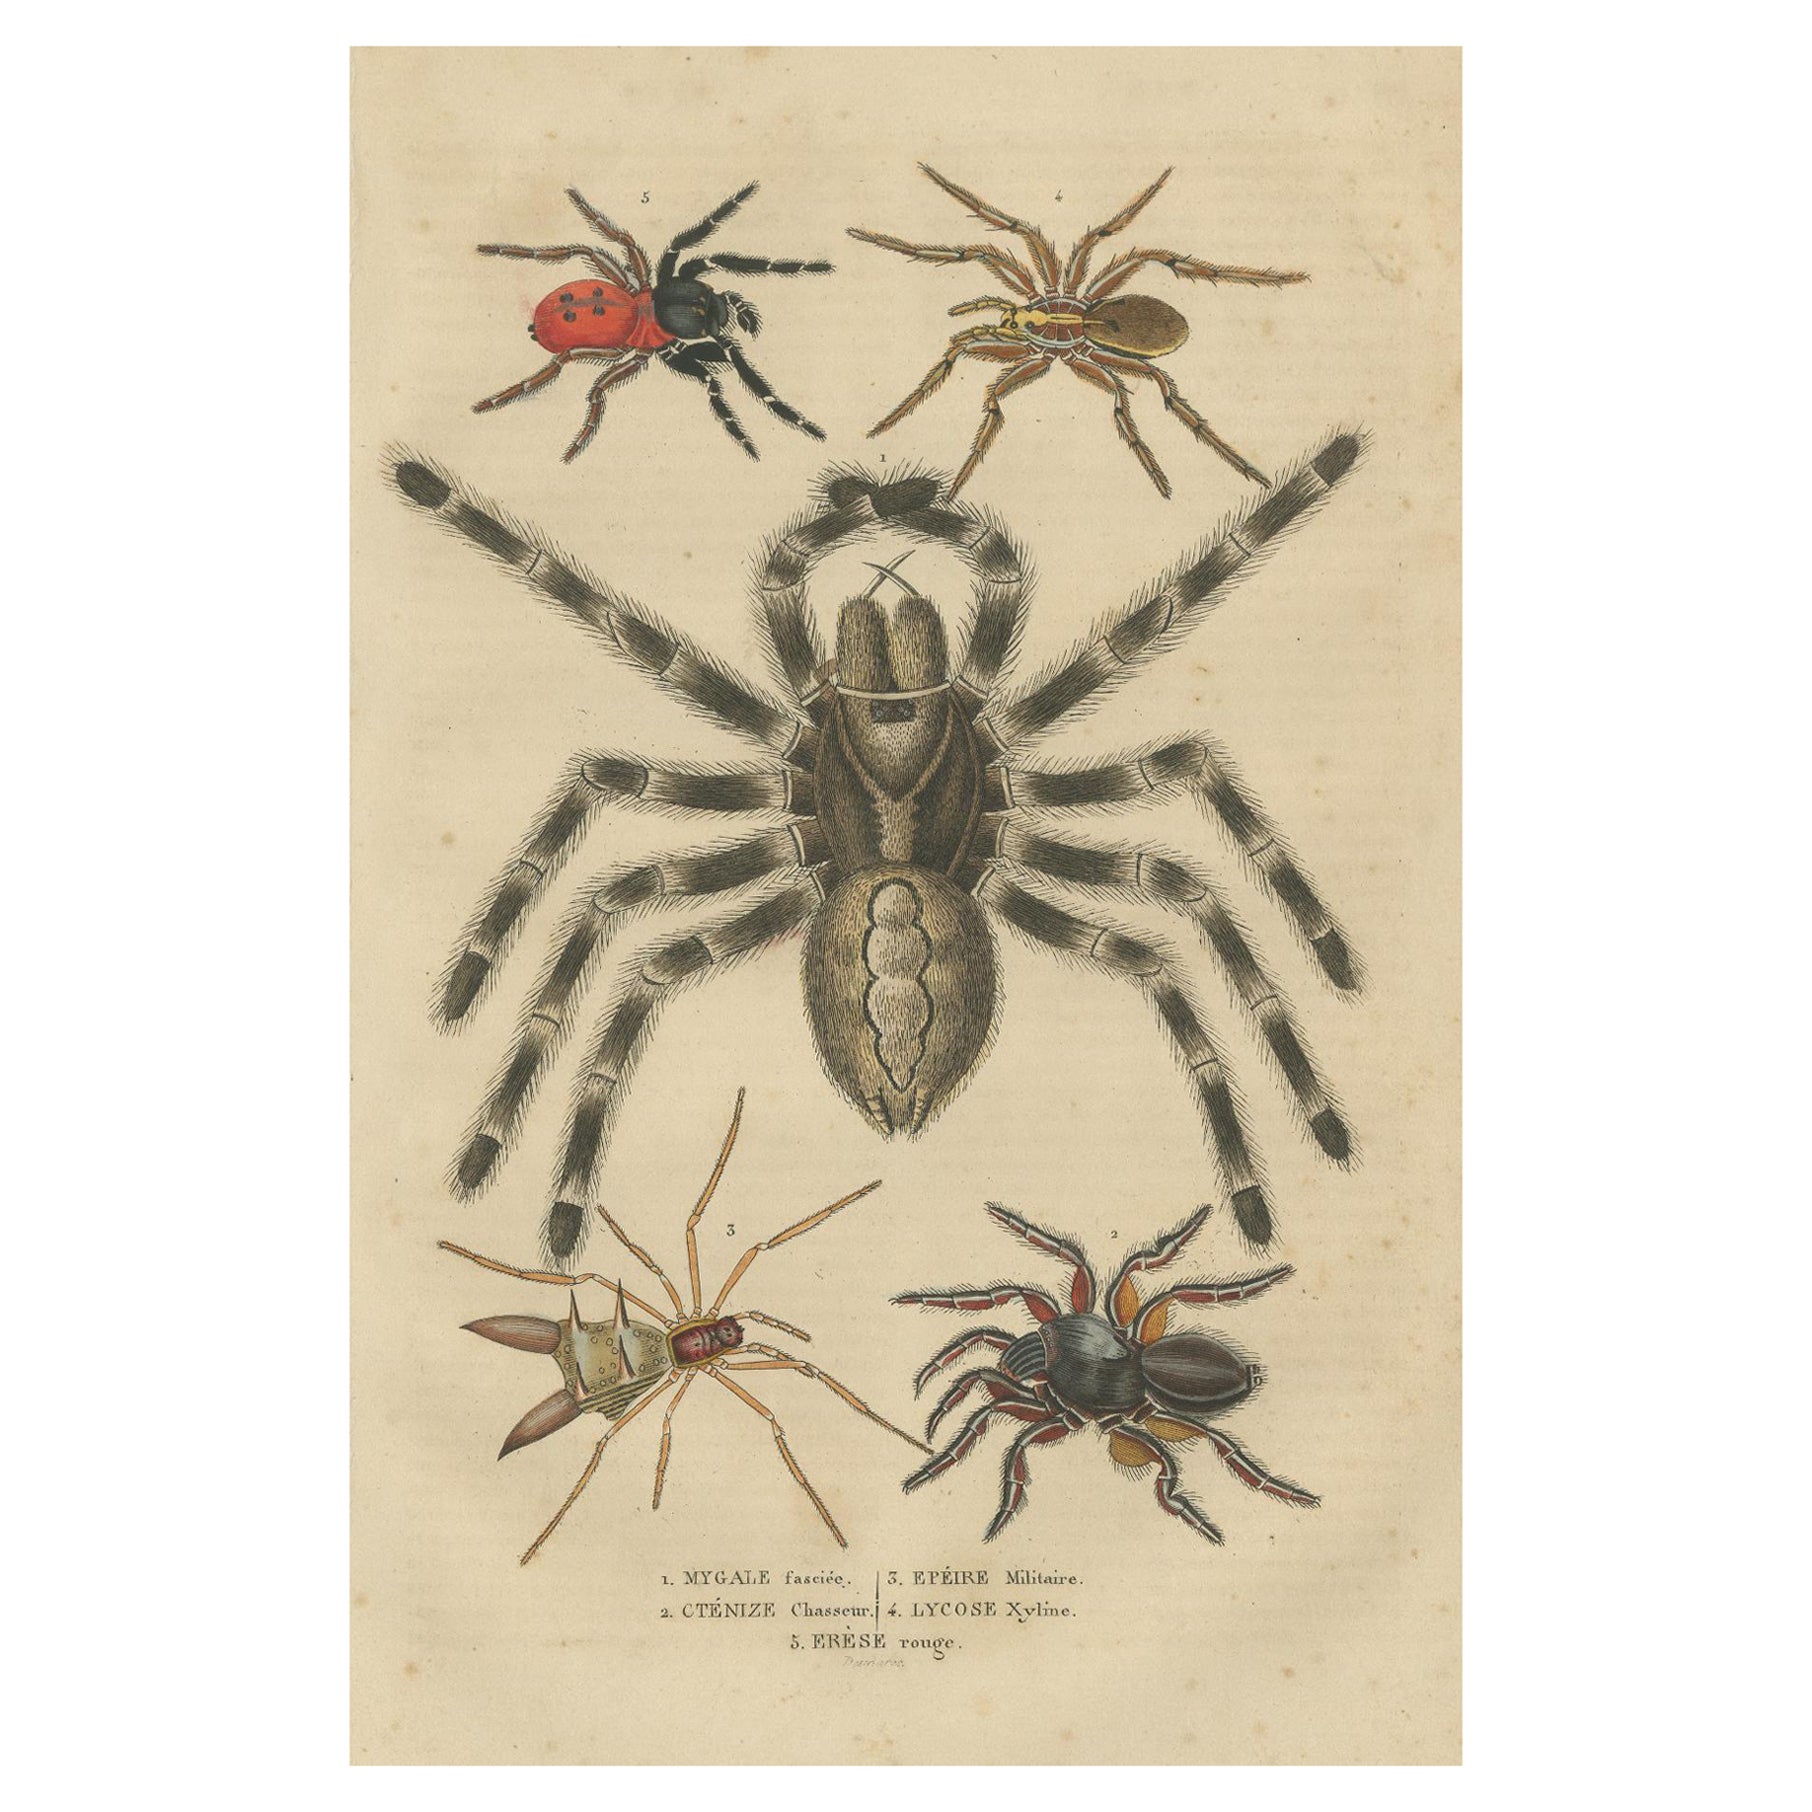 Étude arquée ancienne de 1845 : gravure colorée à la main de diverses spécifications d'araignées